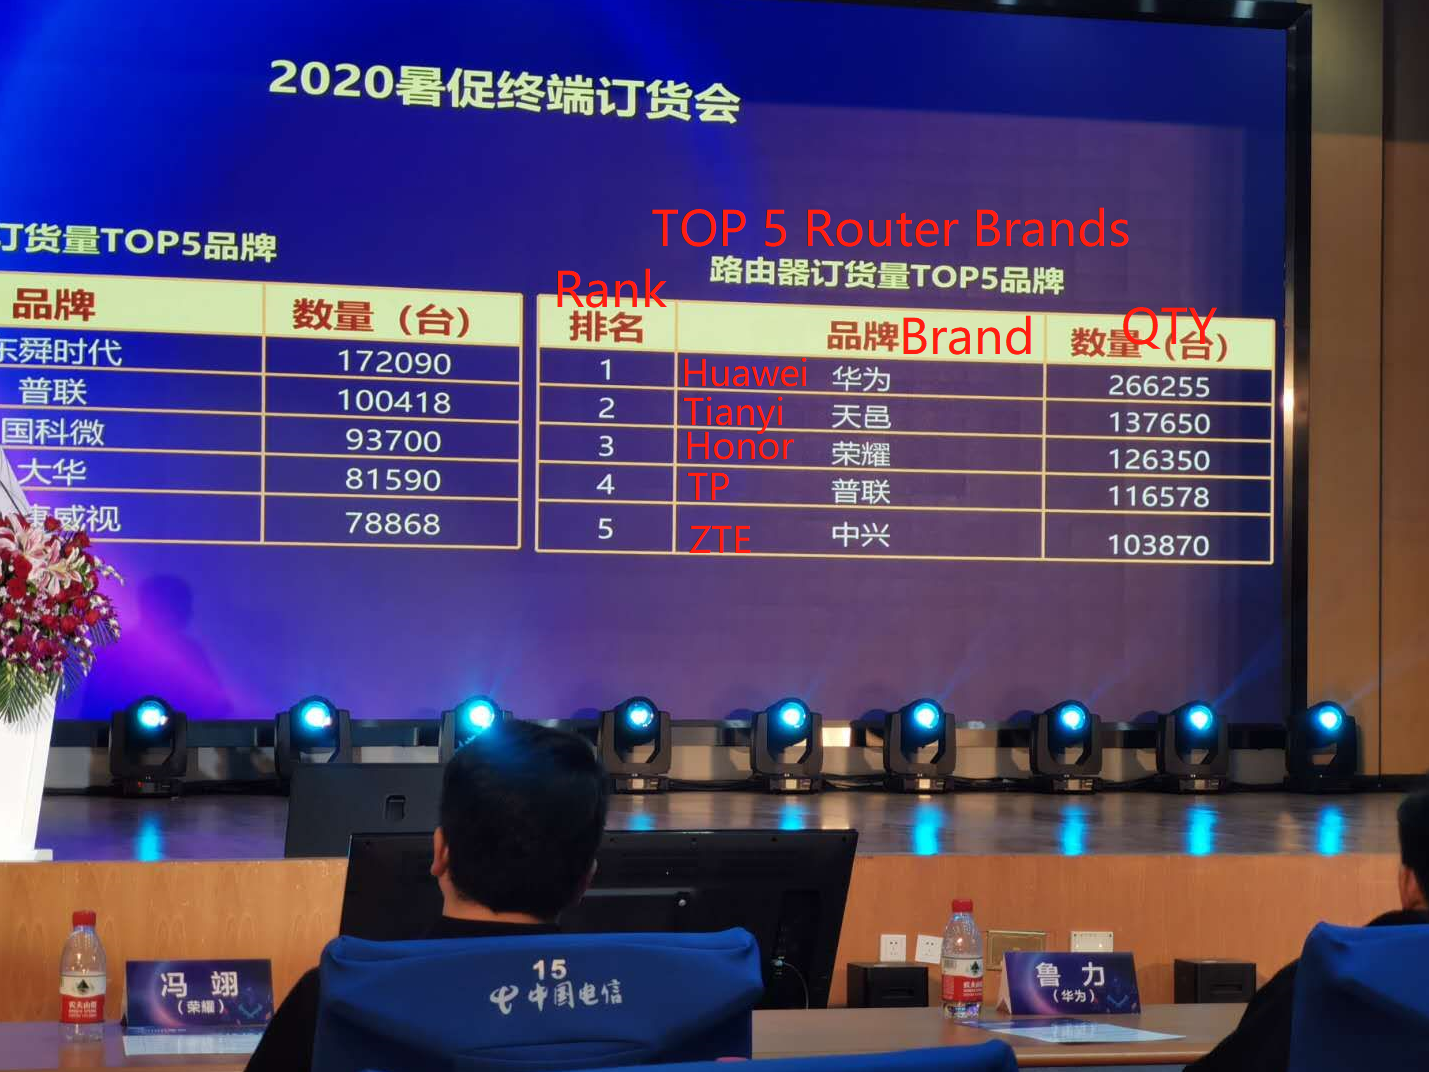 Tianyi AX1800 WiFi 6 Mesh Router ranks top 2 following Huawei in China Telecom